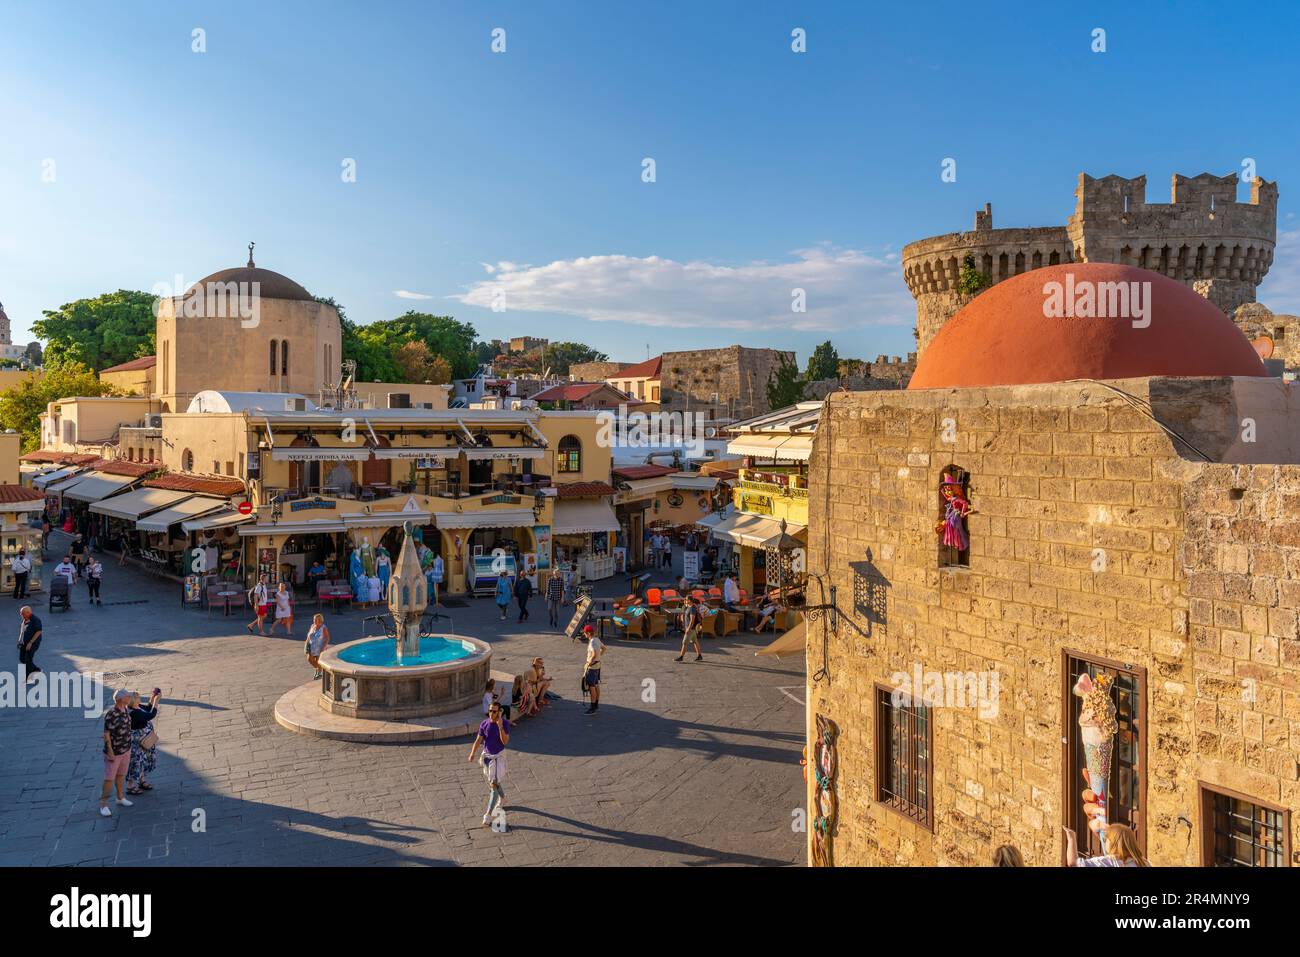 Vue sur la place Hippocrate, la vieille ville de Rhodes, site classé au patrimoine mondial de l'UNESCO, Rhodes, Dodécanèse, îles grecques, Grèce, Europe Banque D'Images